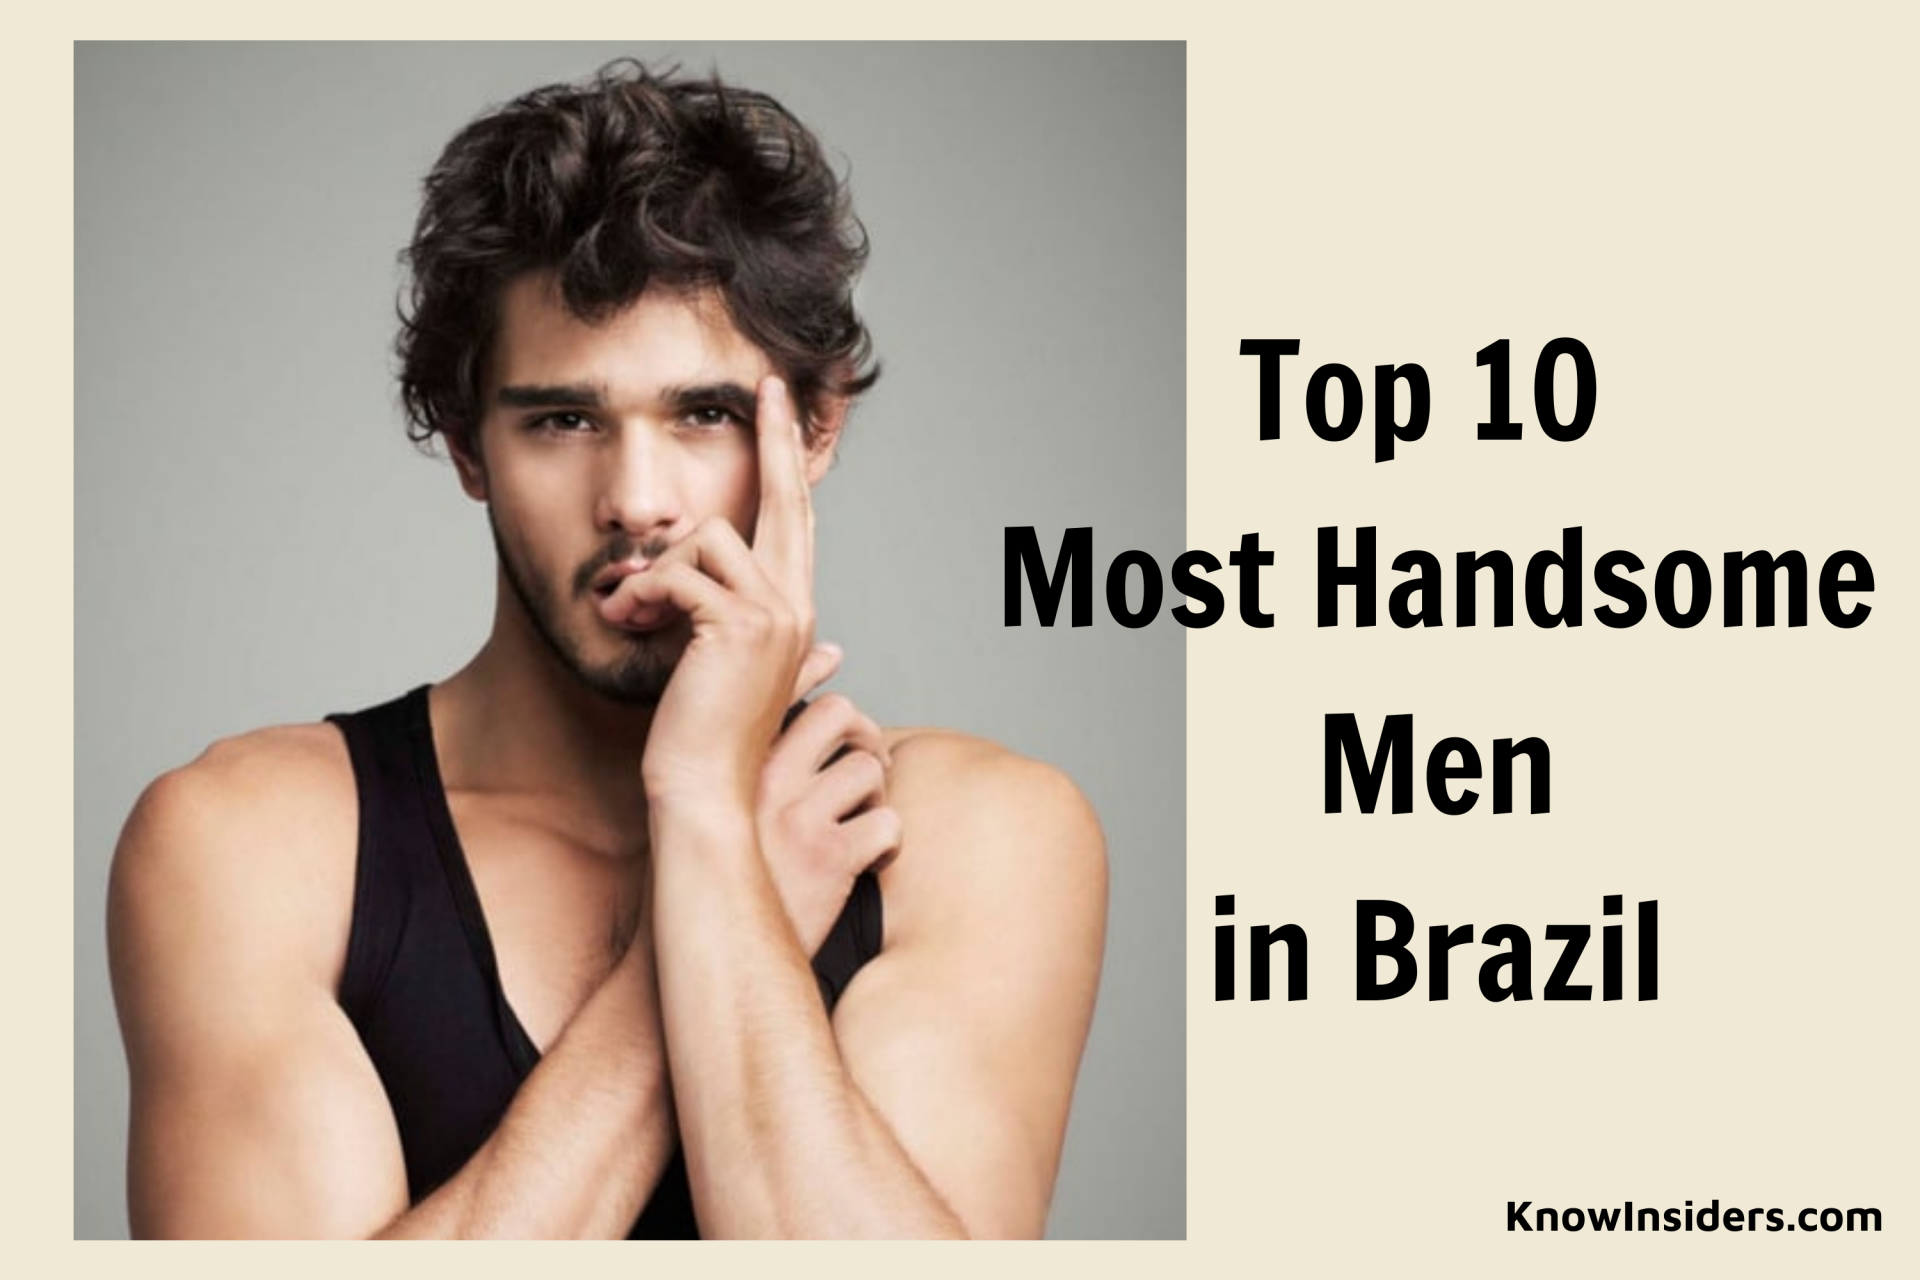 Top 10 Most Handsome Men in Brazil - Updated